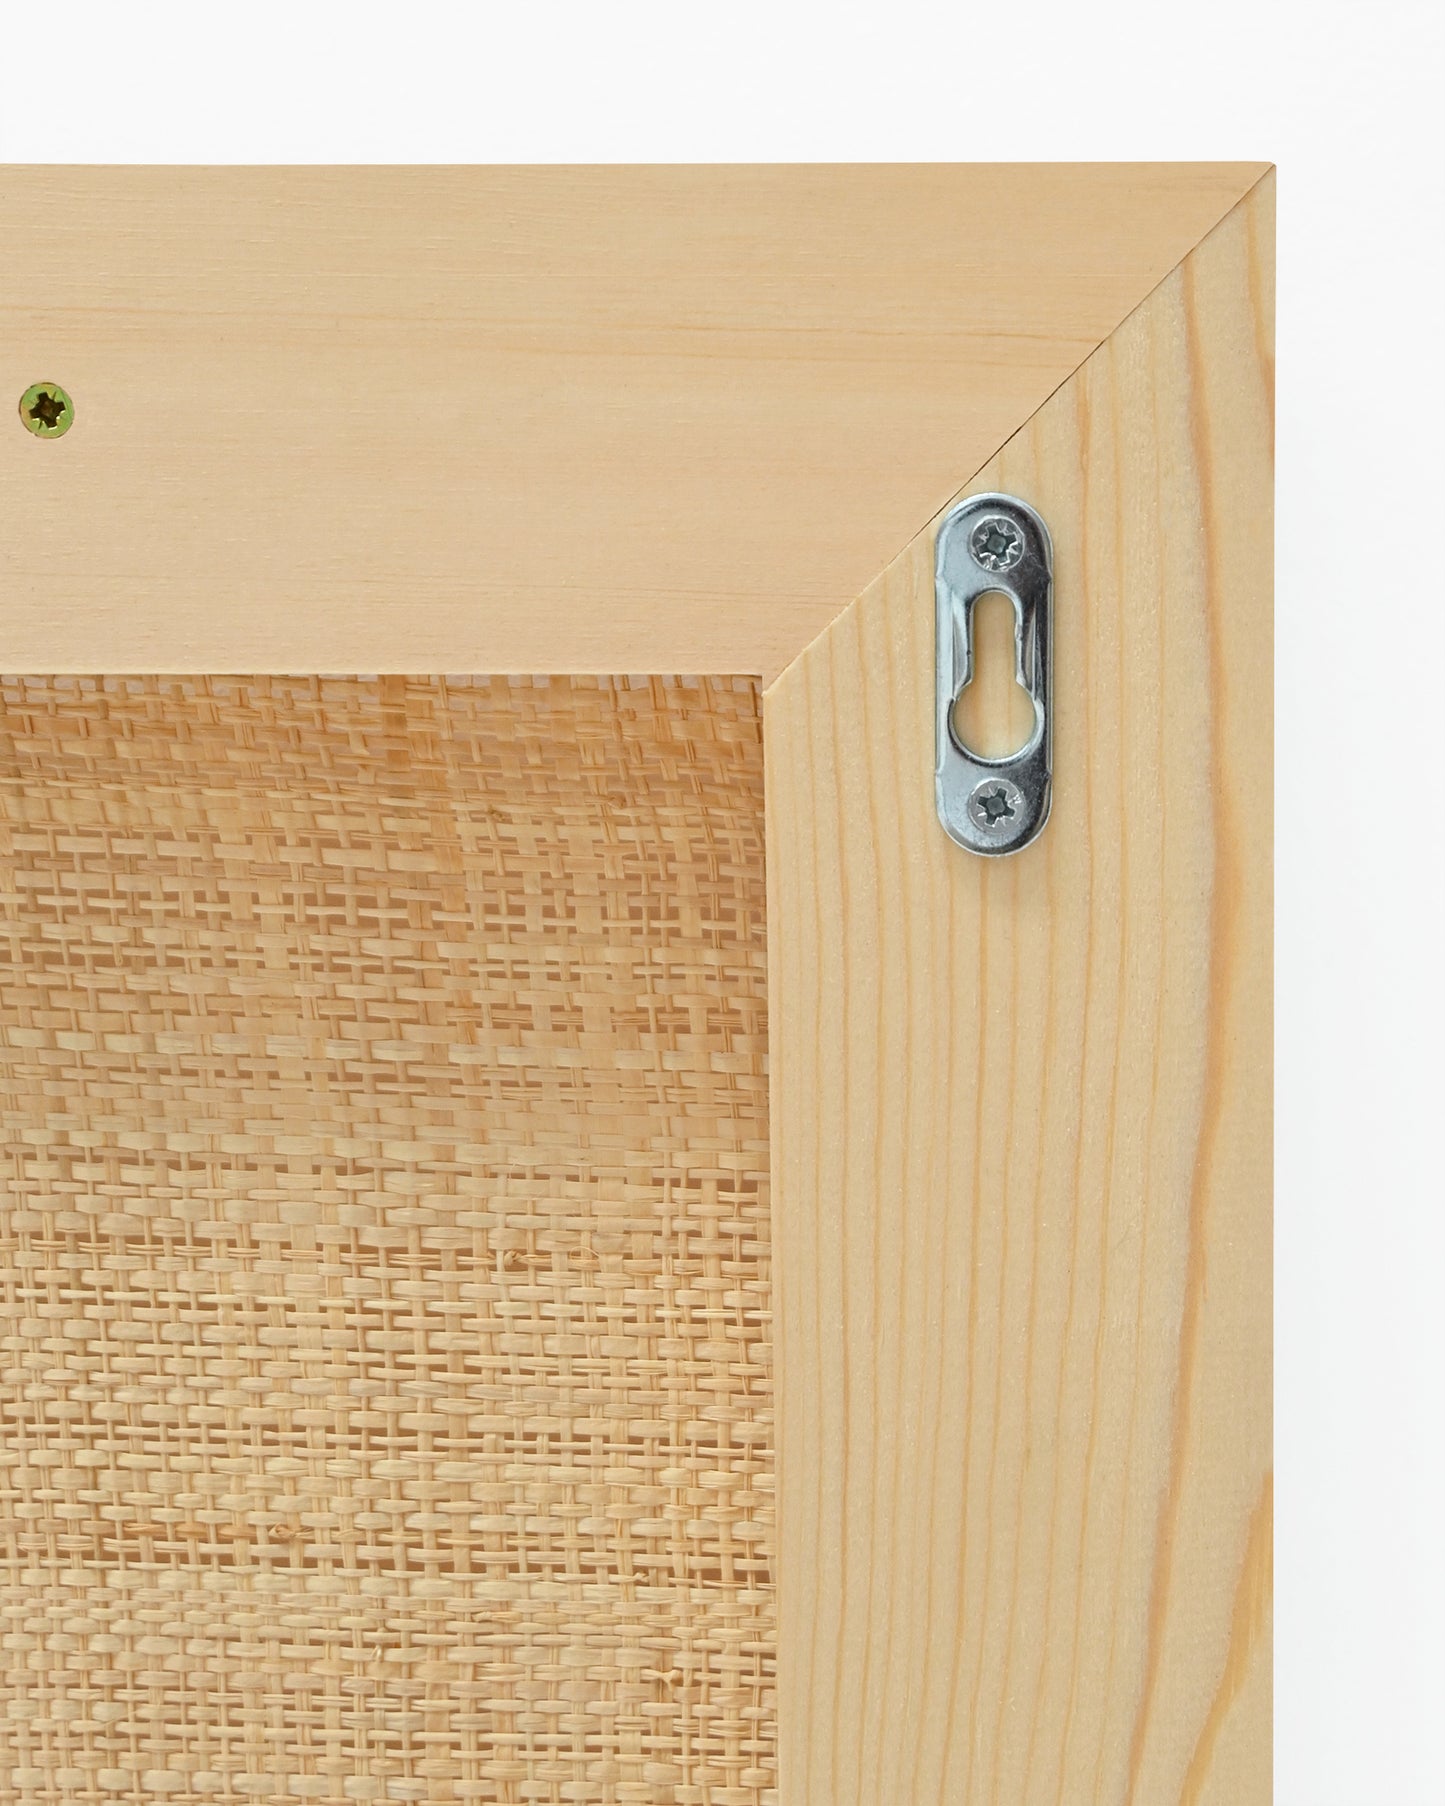 Cabecero de madera maciza y rafia en tono natural de 100x60cm - DECOWOOD